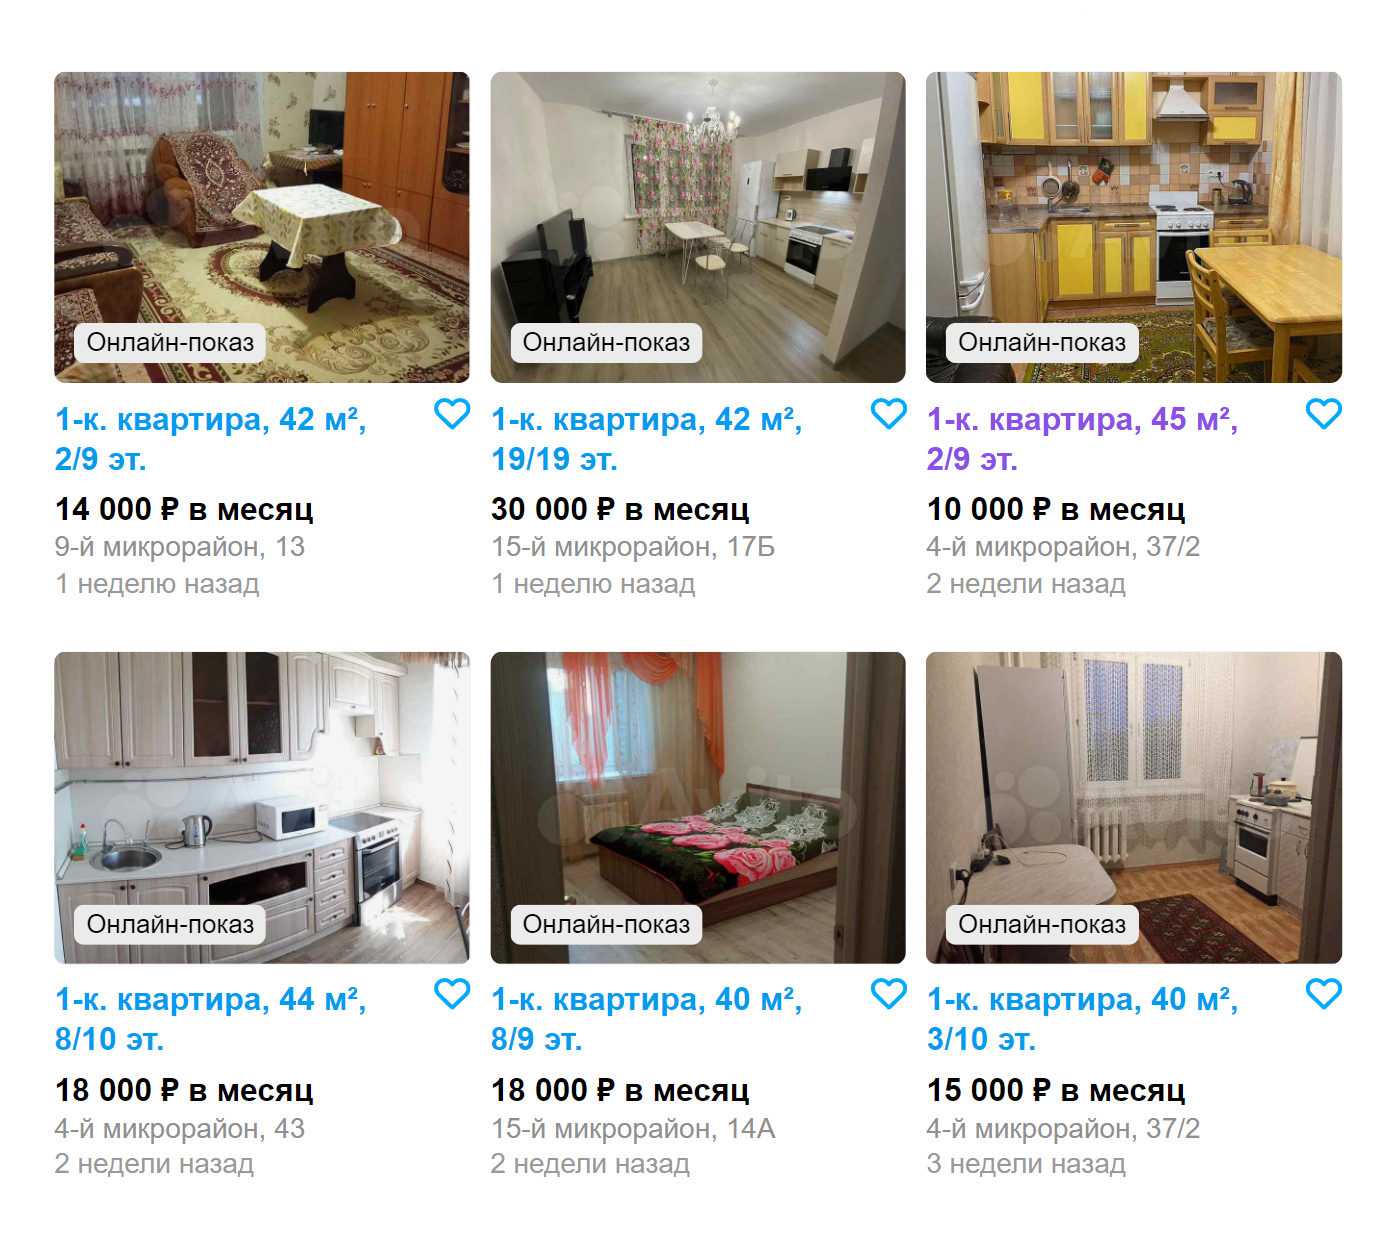 Цены на аренду однокомнатных квартир в нашем городе. Источник: avio.ru